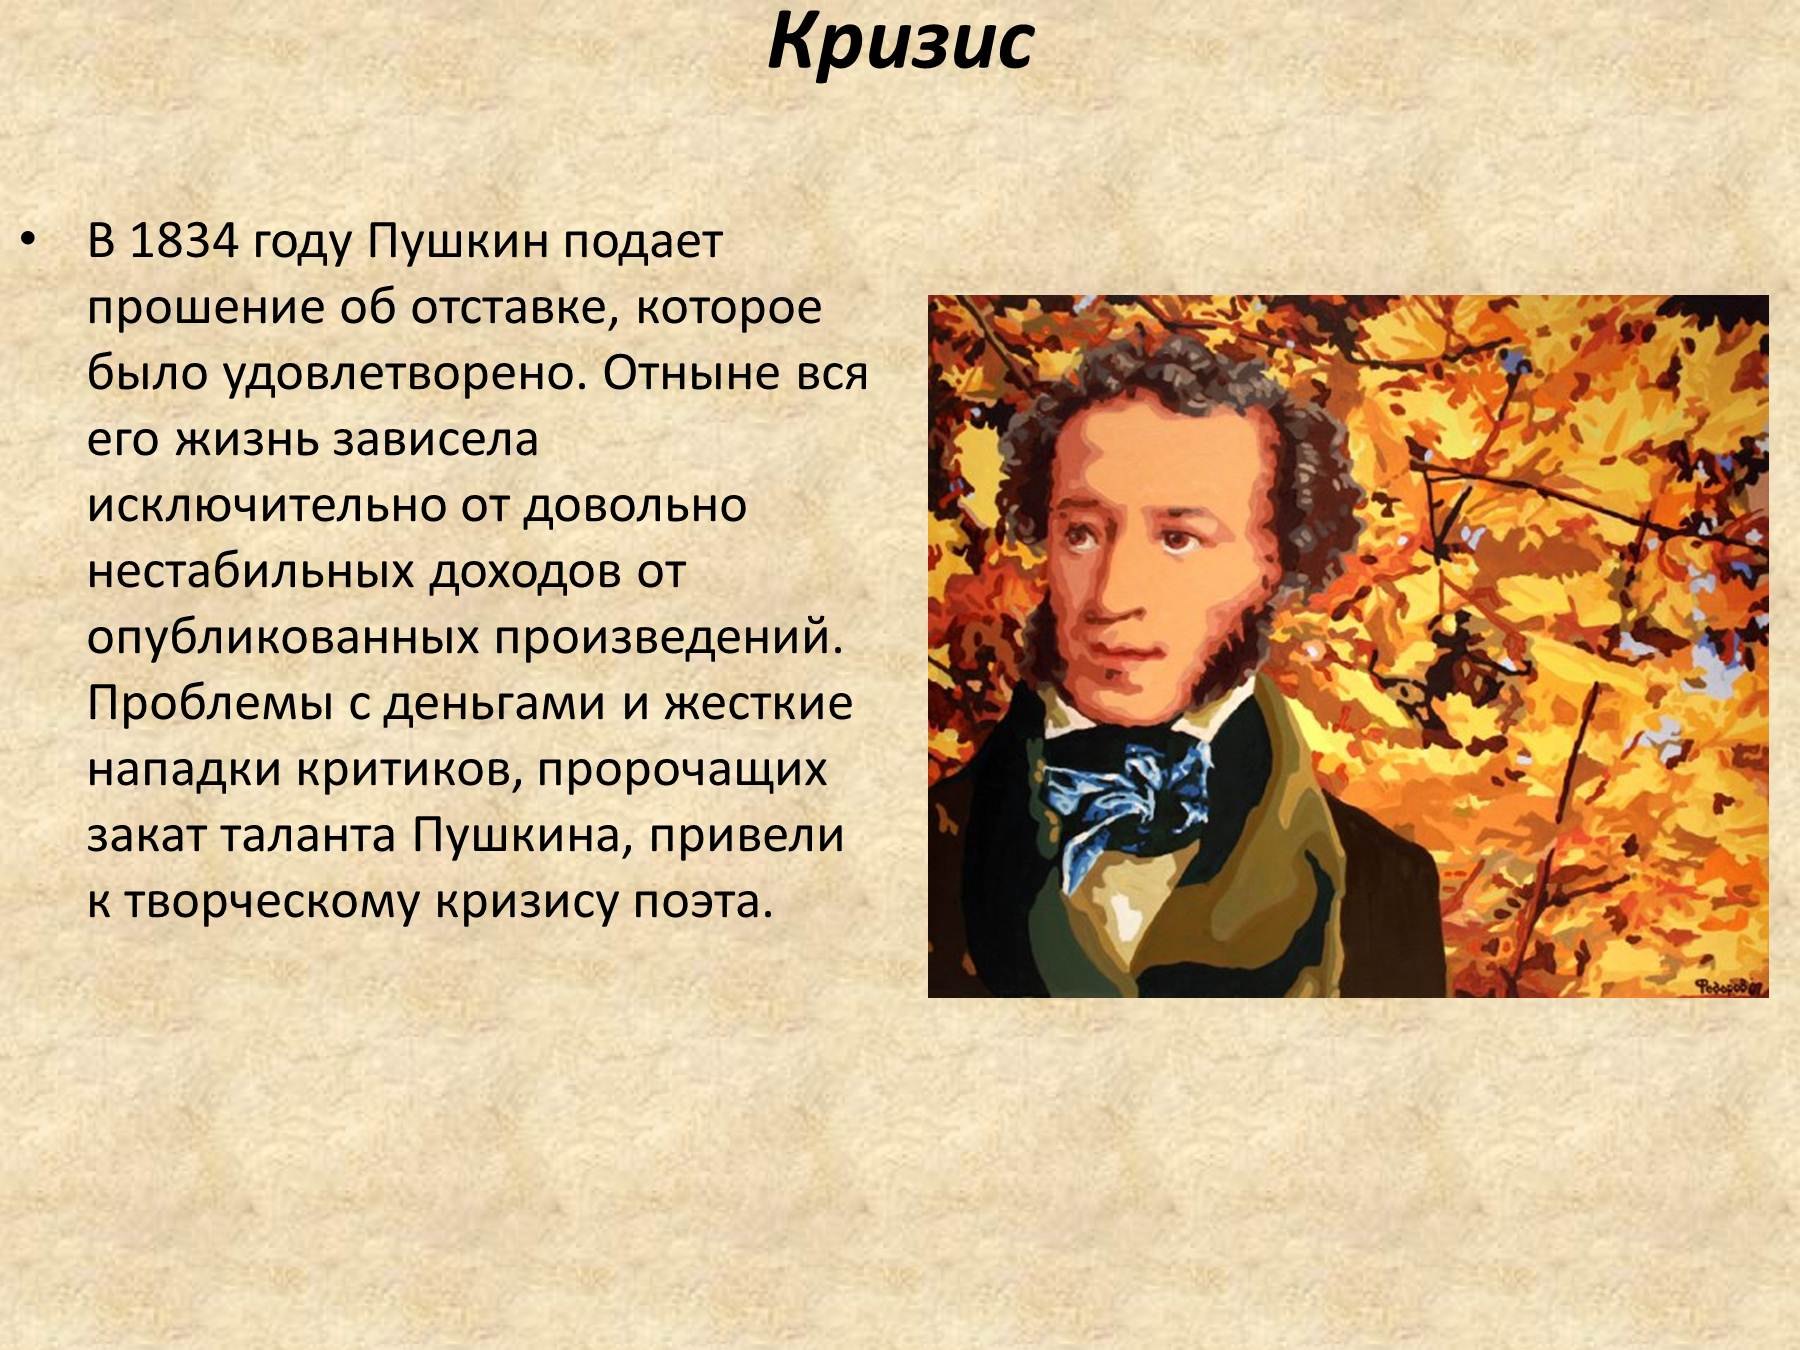 1 факт пушкина. Сообщение о Пушкине. Пушкин биография. Презентация о Пушкине.